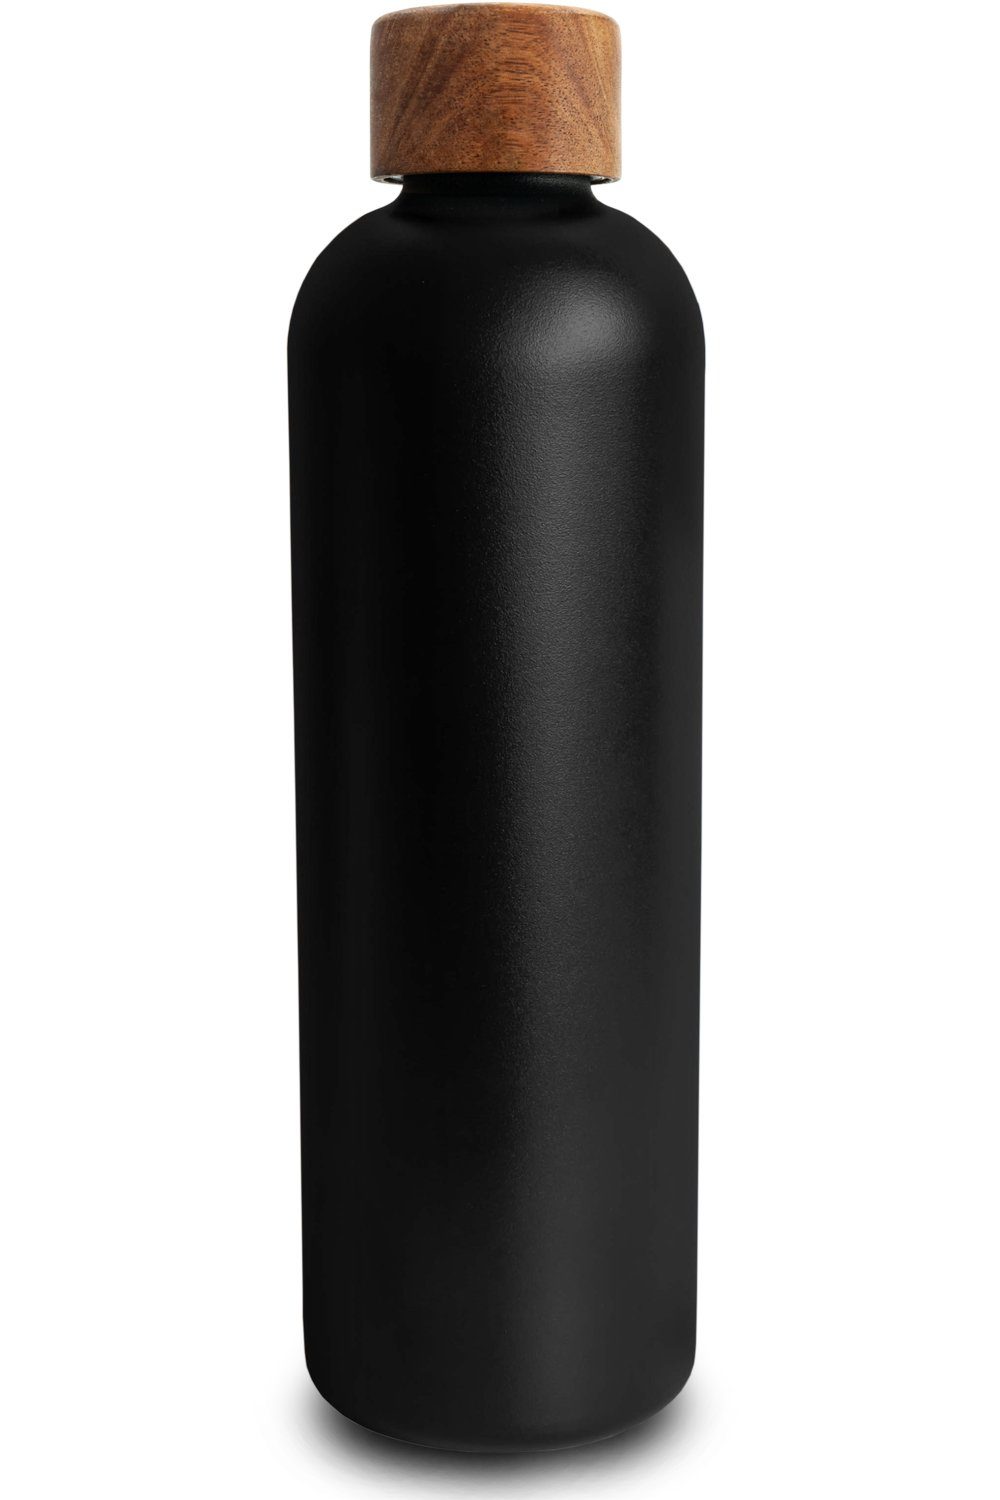 TRENDY AND NEW Trinkflasche T&N Edelstahl Trinkflasche 1 Liter - Wood Edition, Thermosflasche 1l für Büro, auslaufsichere, robuste, isolierte Wasserflasche 1000ml für Kohlensäure, Thermoskanne für unterwegs, Isolierflasche für Tee & Kaffee, hält 14h HEISS 29h EISKALT, Flasche für Sprudel-Wasser